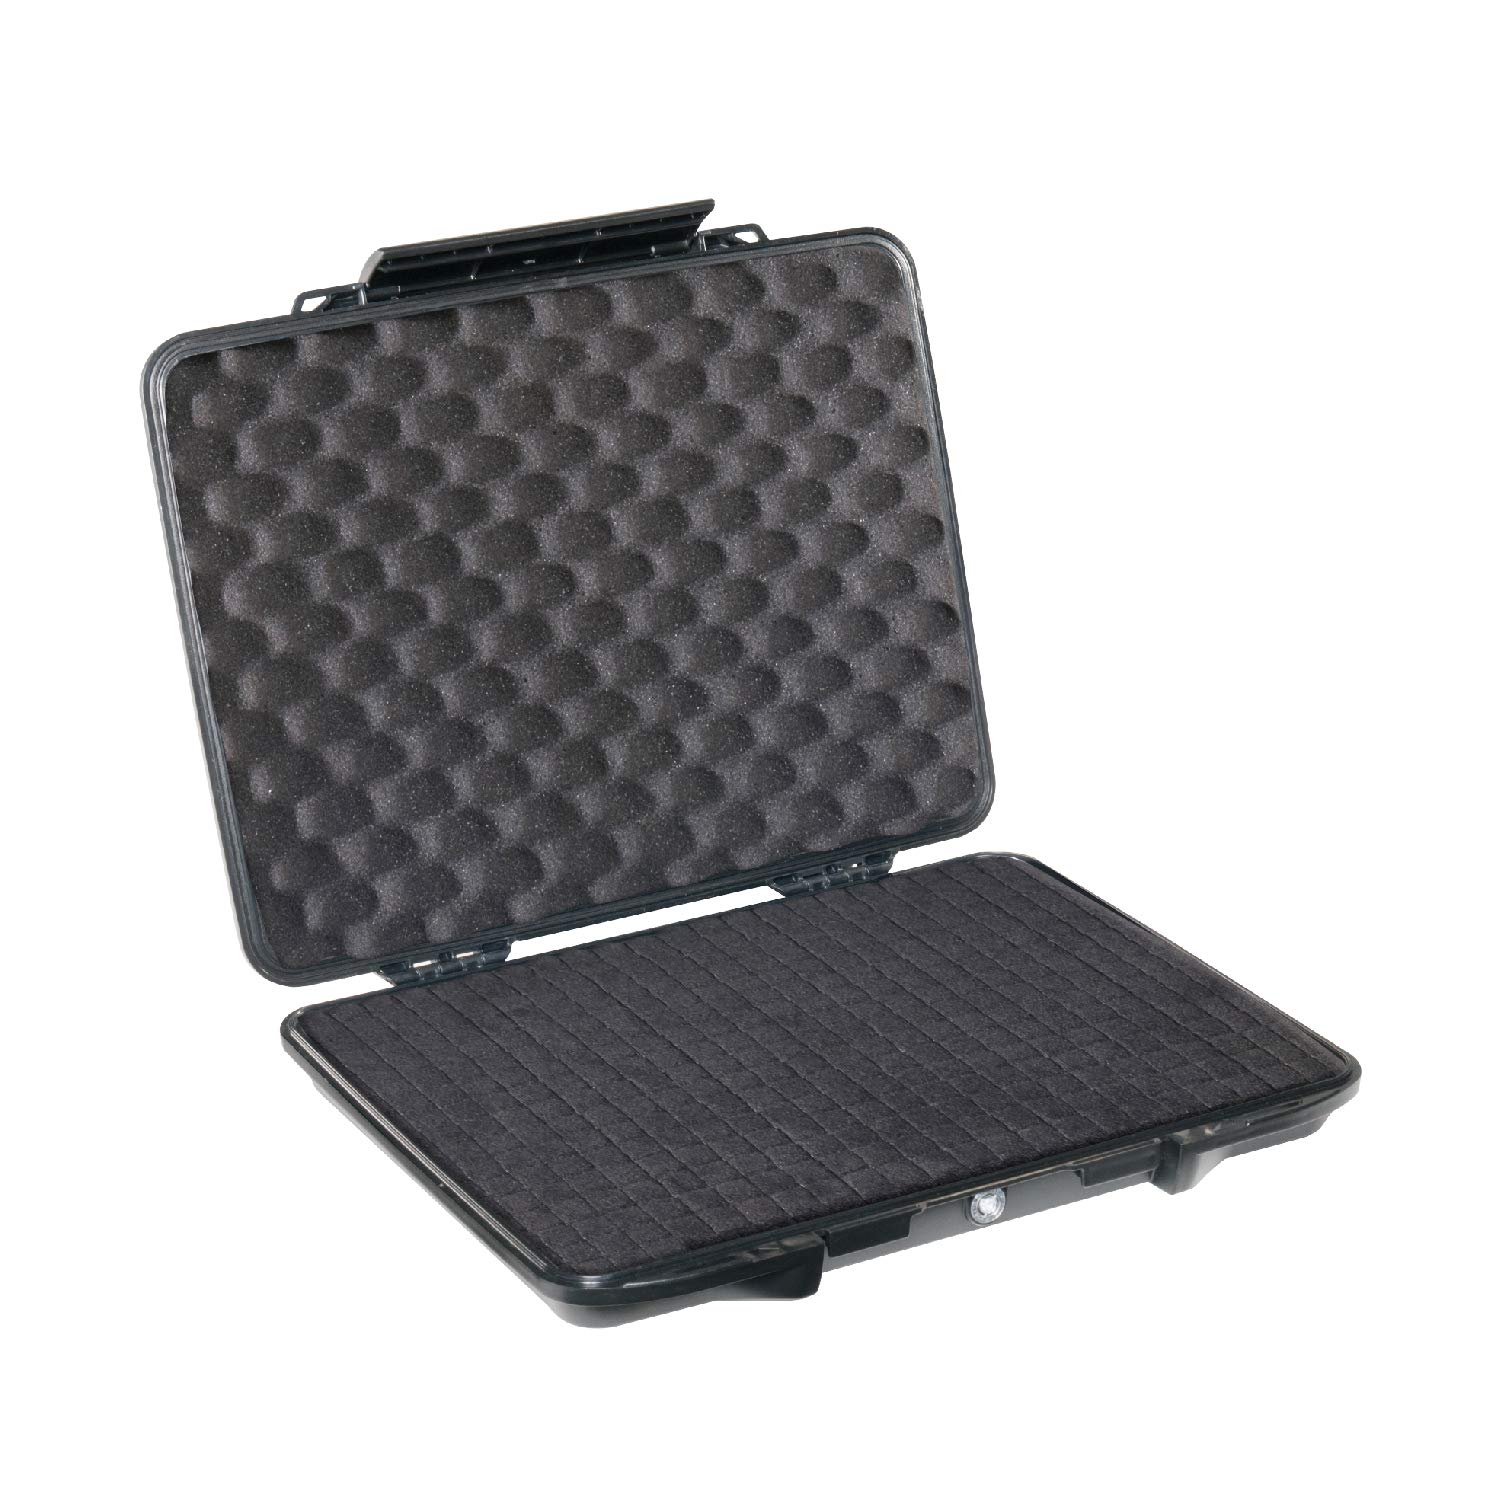 Pelican 1085 Laptop Case With Foam (Black)